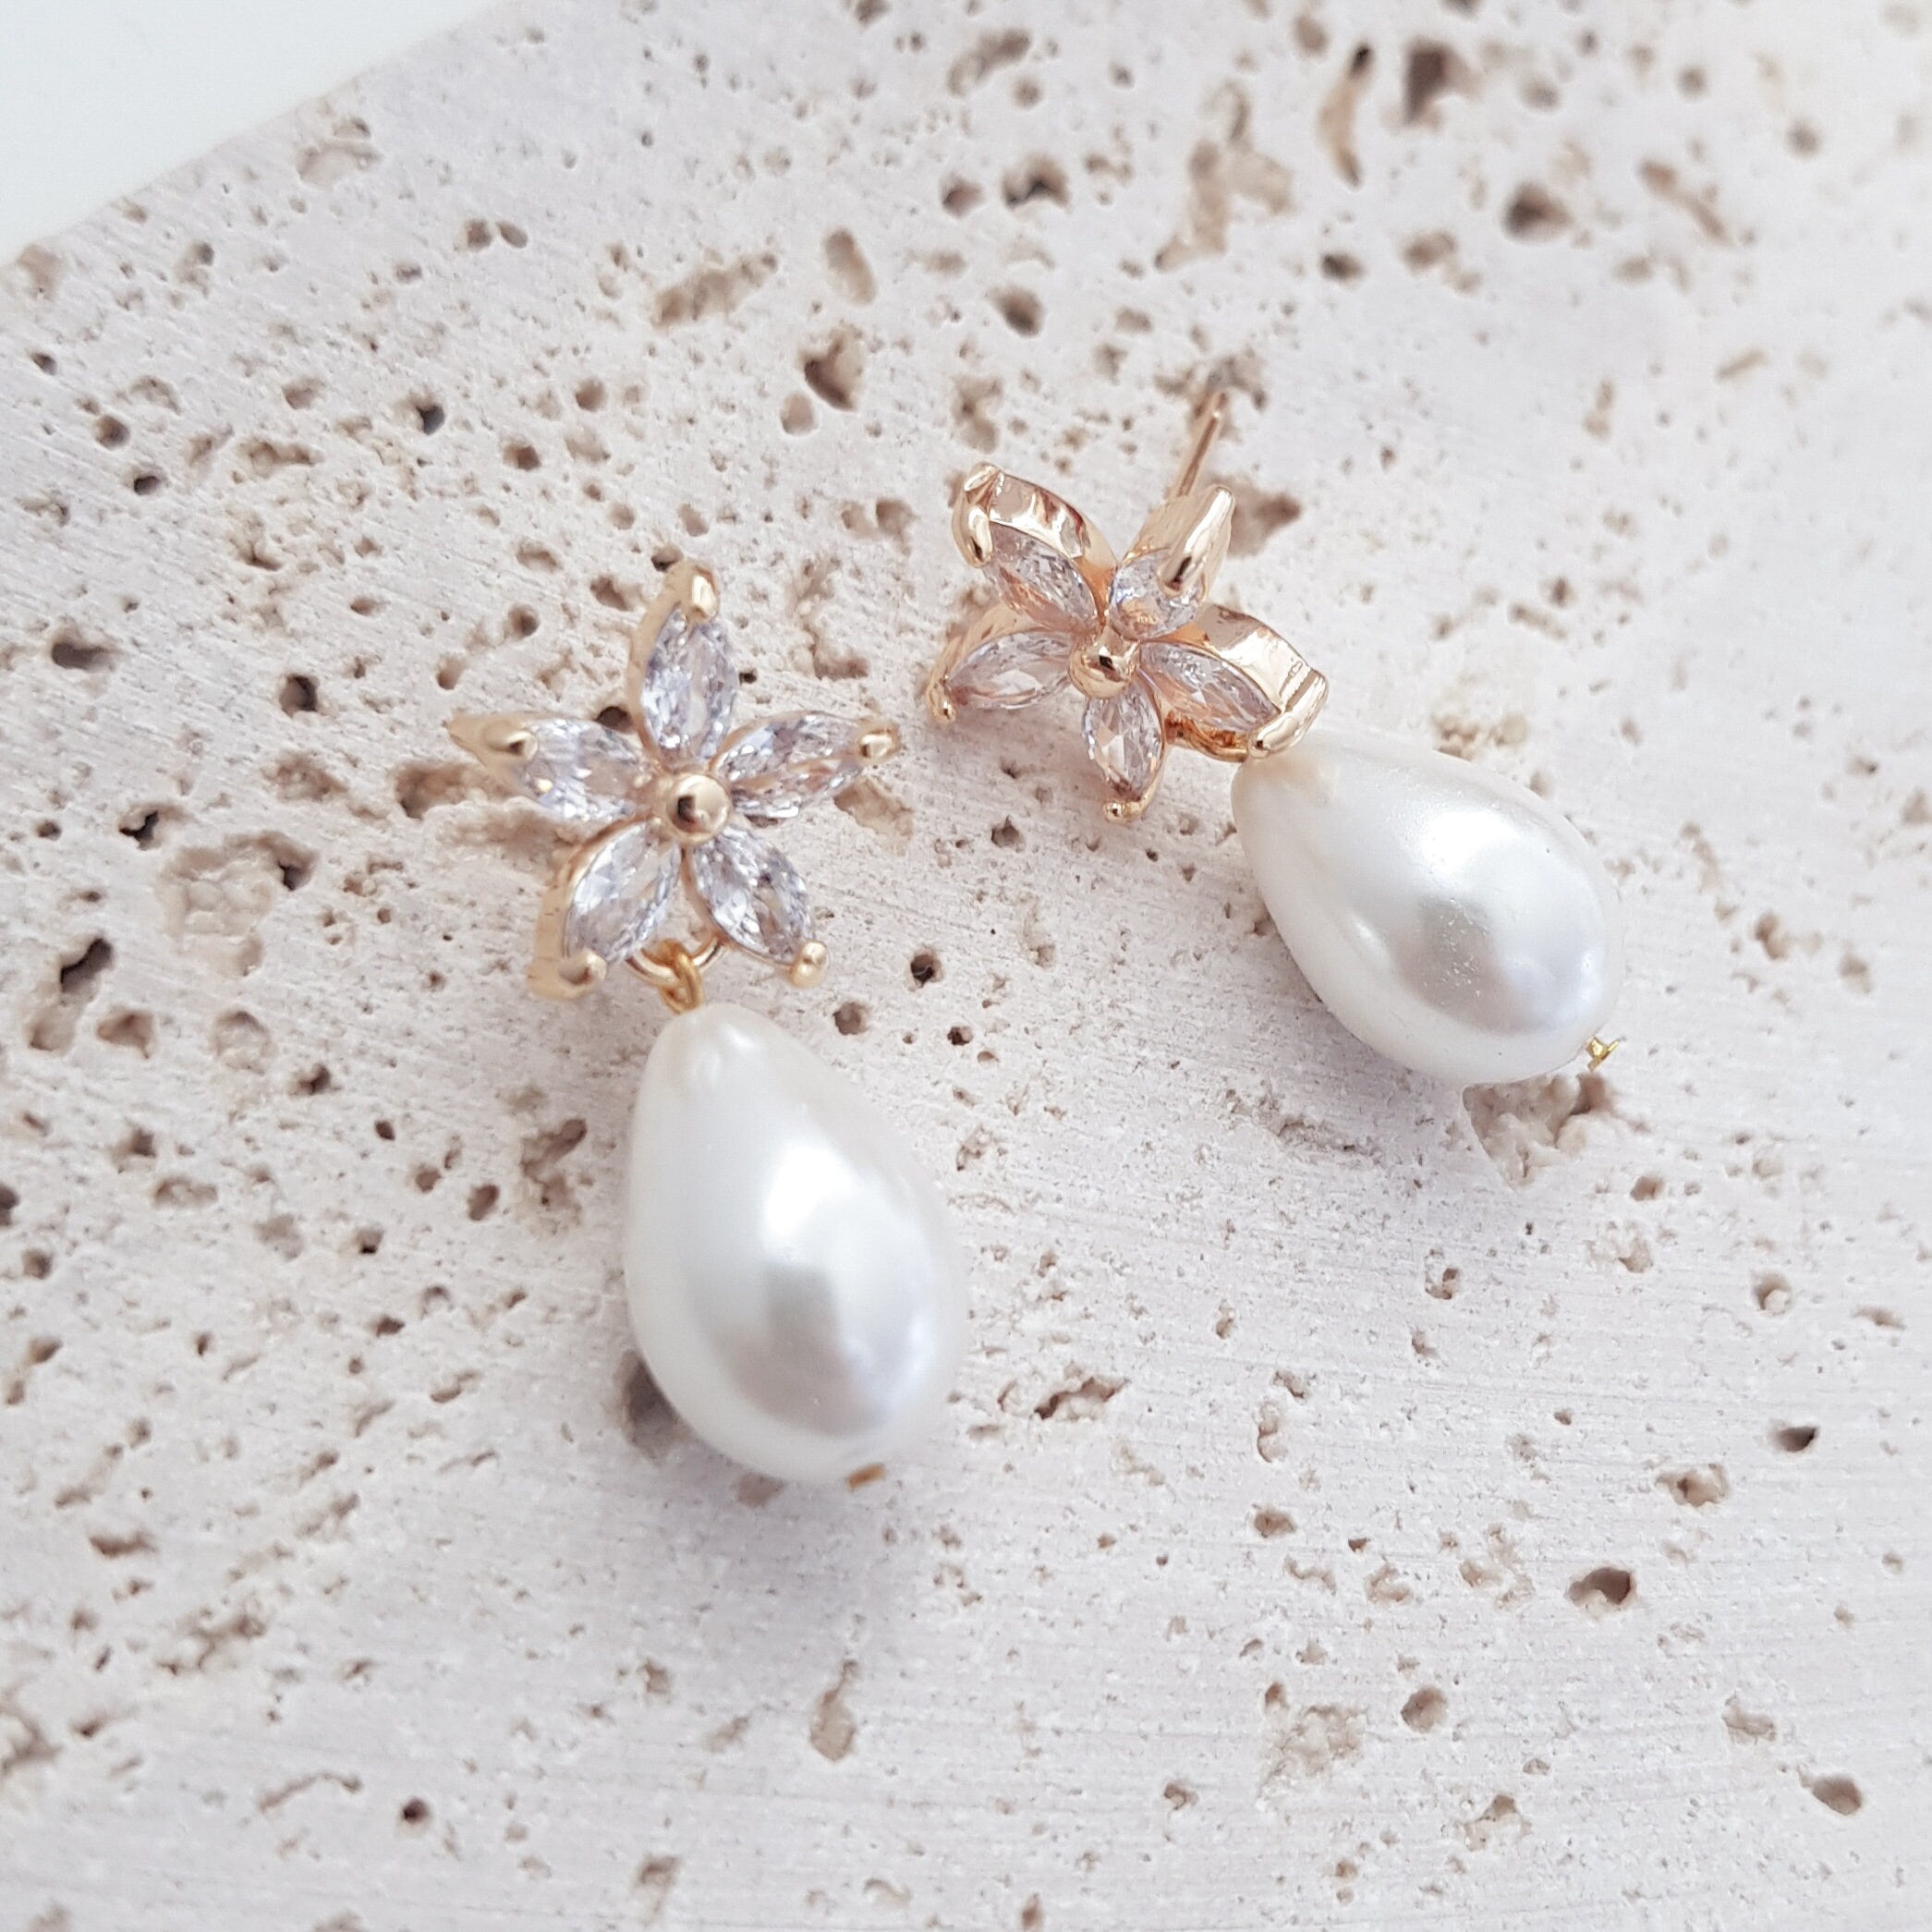 Pearl Earrings, Vintage Style Earrings, Gold Teardrop Pearl Earrings, Wedding Flower Drop Earrings, Bridesmaid Gift